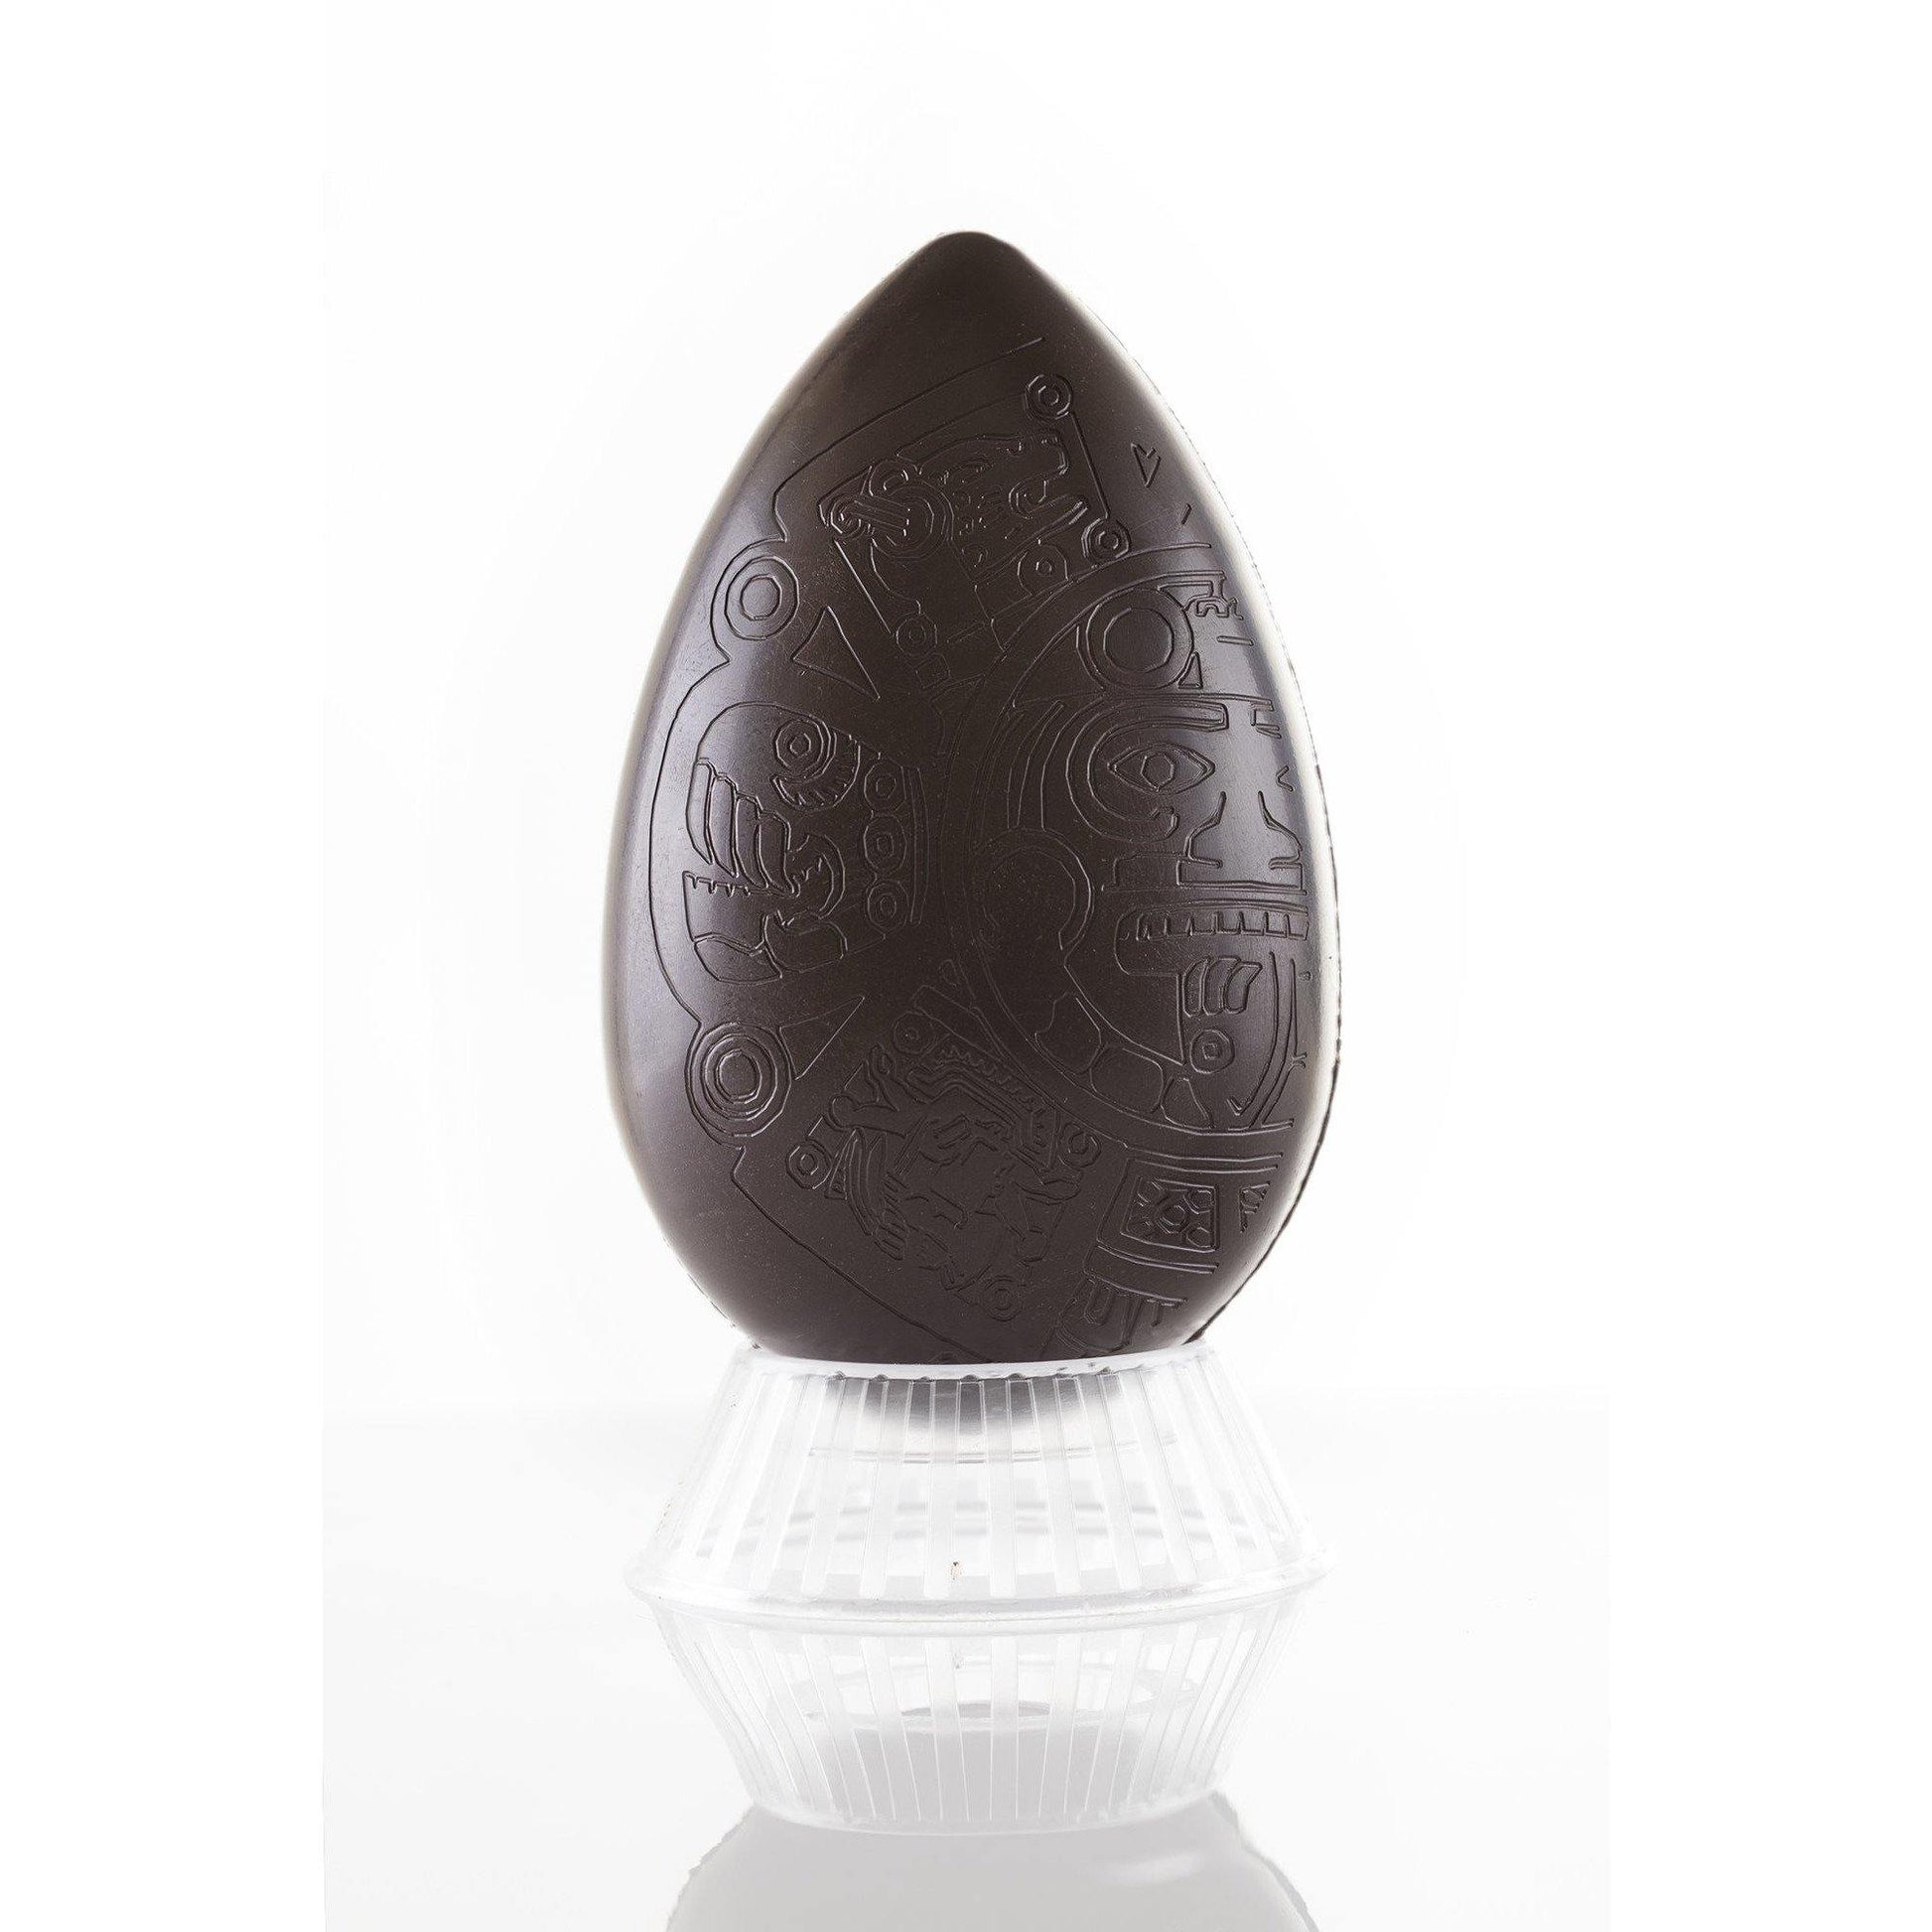 Uovo di Pasqua "Azteco" di puro cioccolato fondente extra di Modica 65% – con sorpresa – GR. 300 Antica Dolceria Rizza 